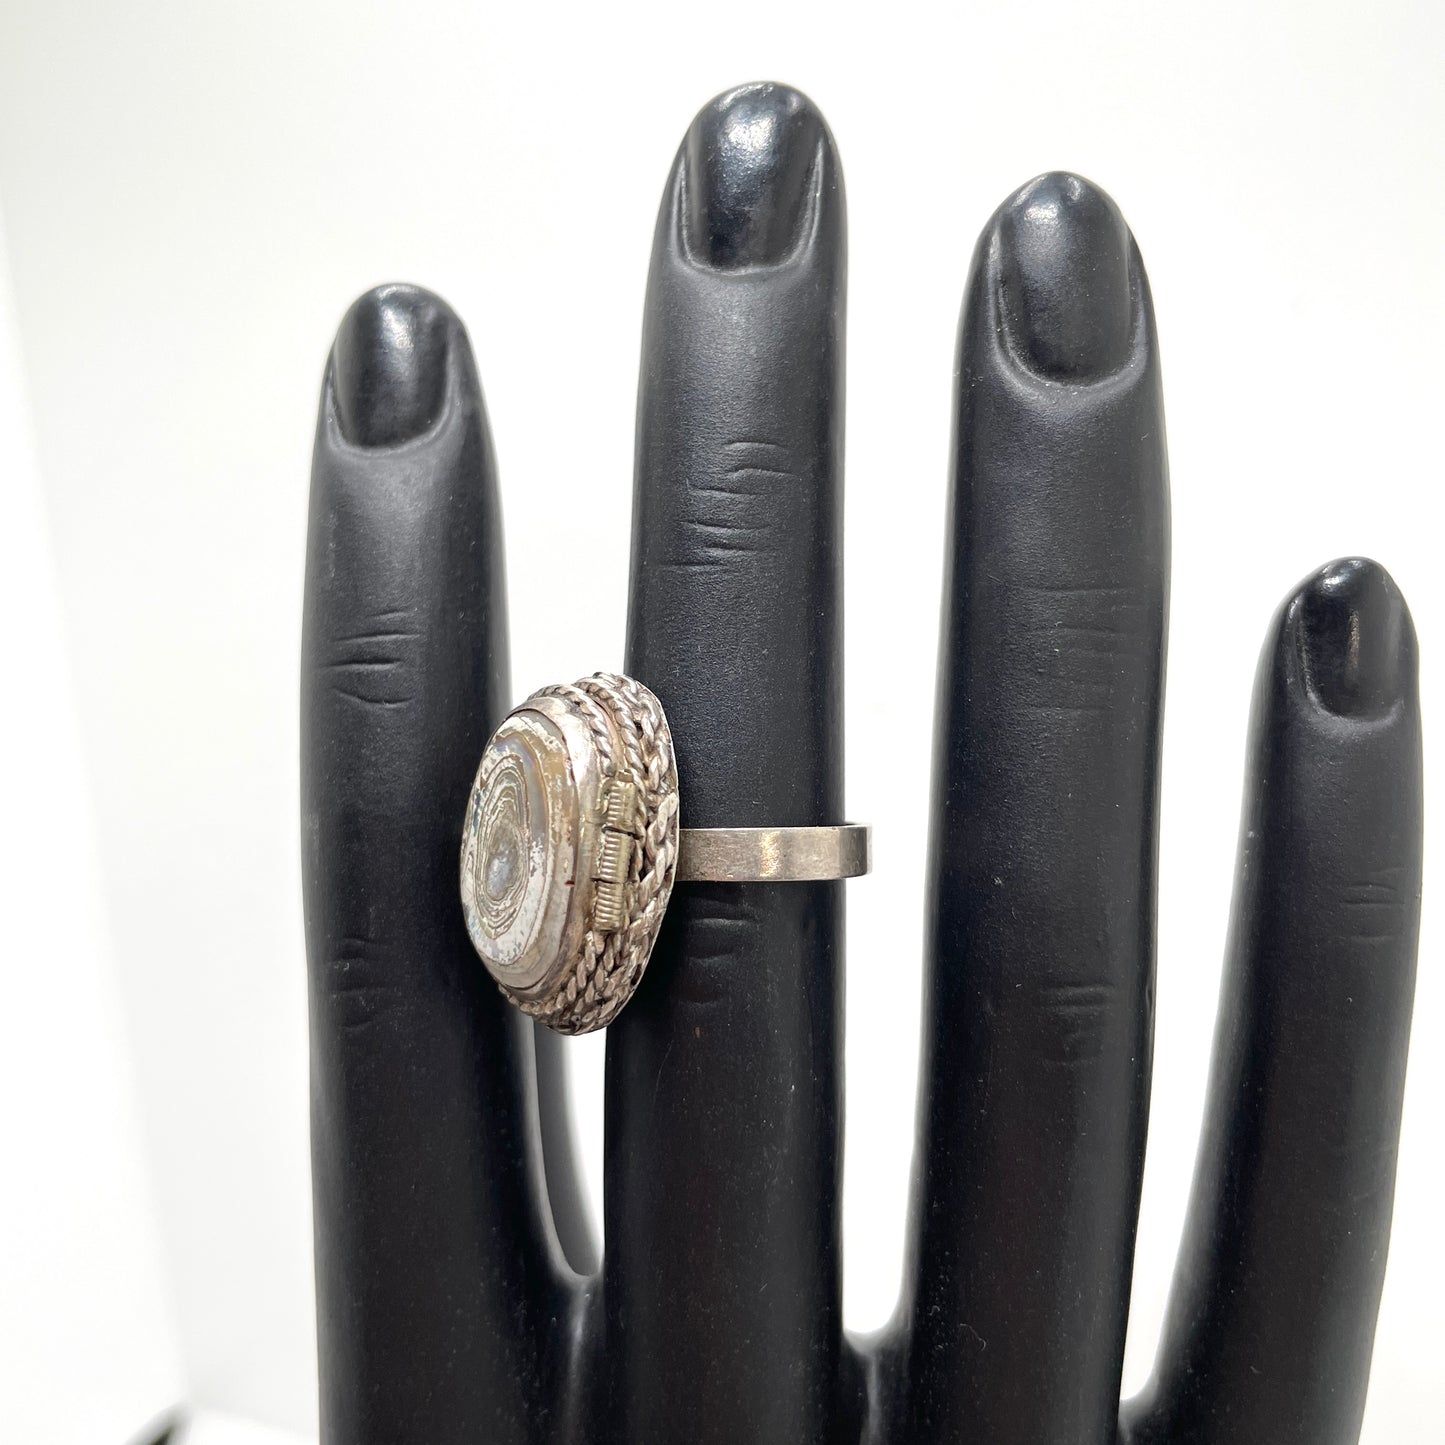 Vintage Sterling Silver Abalone Locket Ring - Adjustable Size